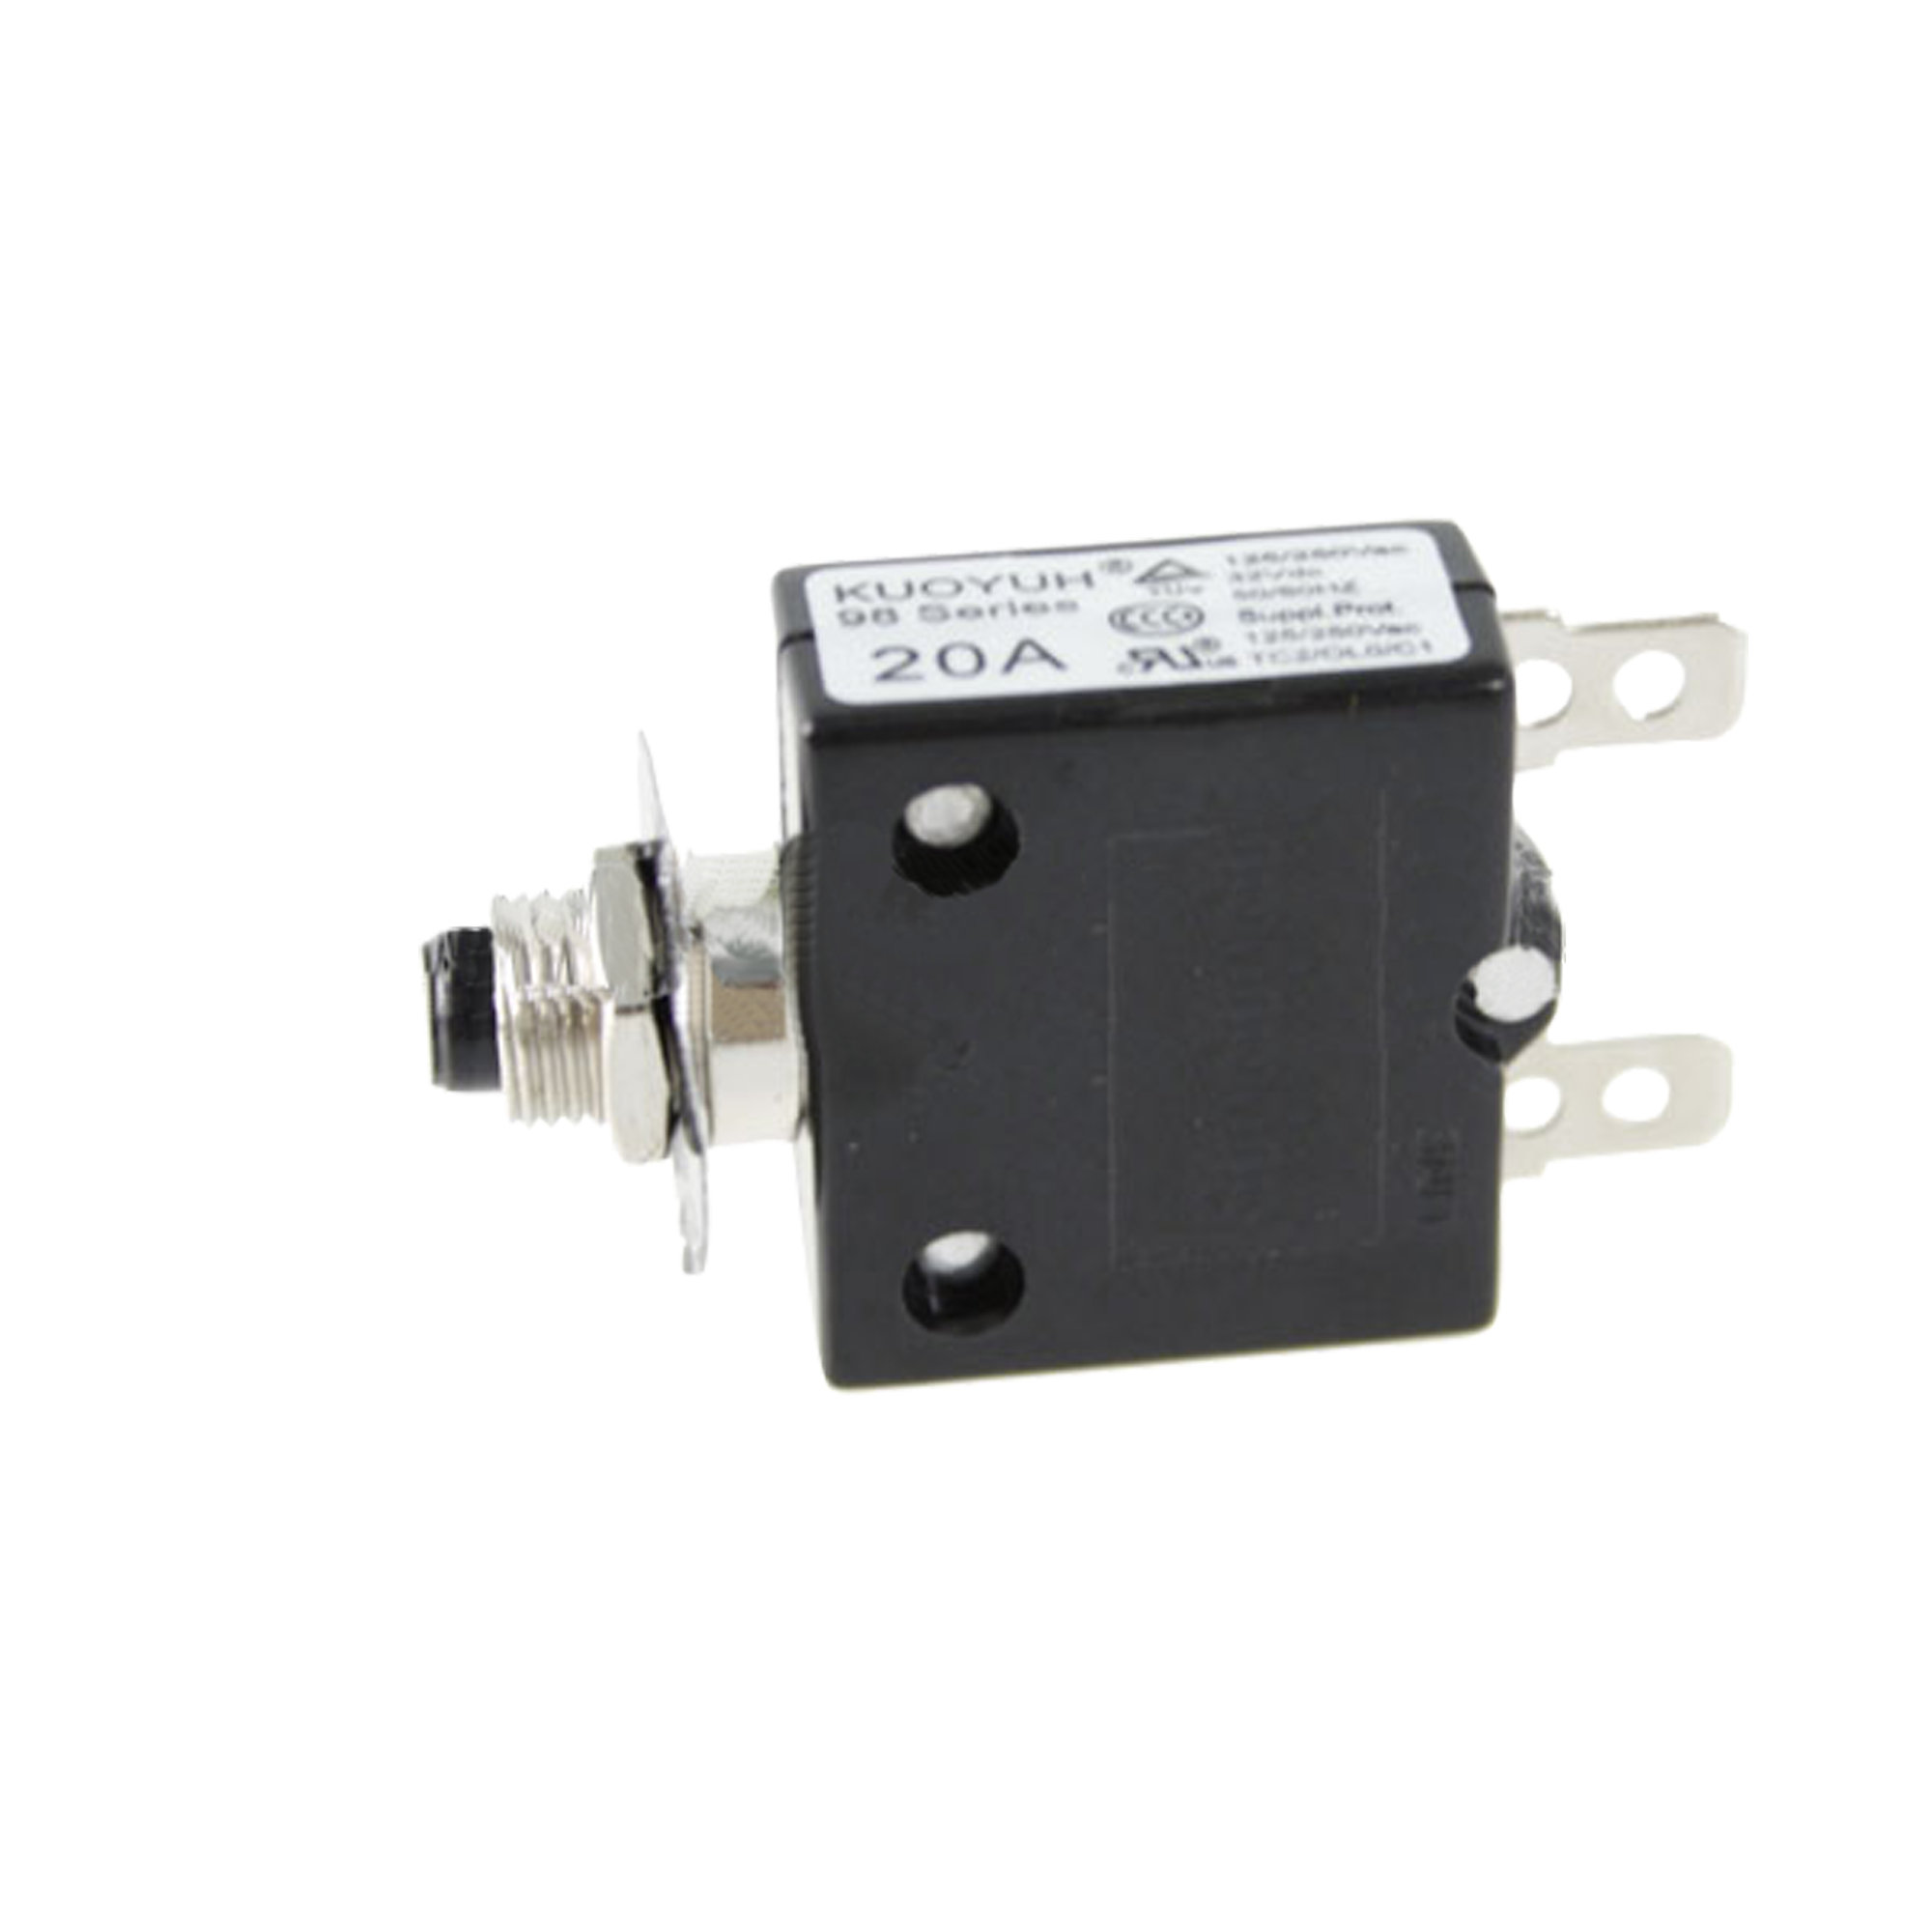 Circuit Breaker;Current;ZE-700 20A/250V;